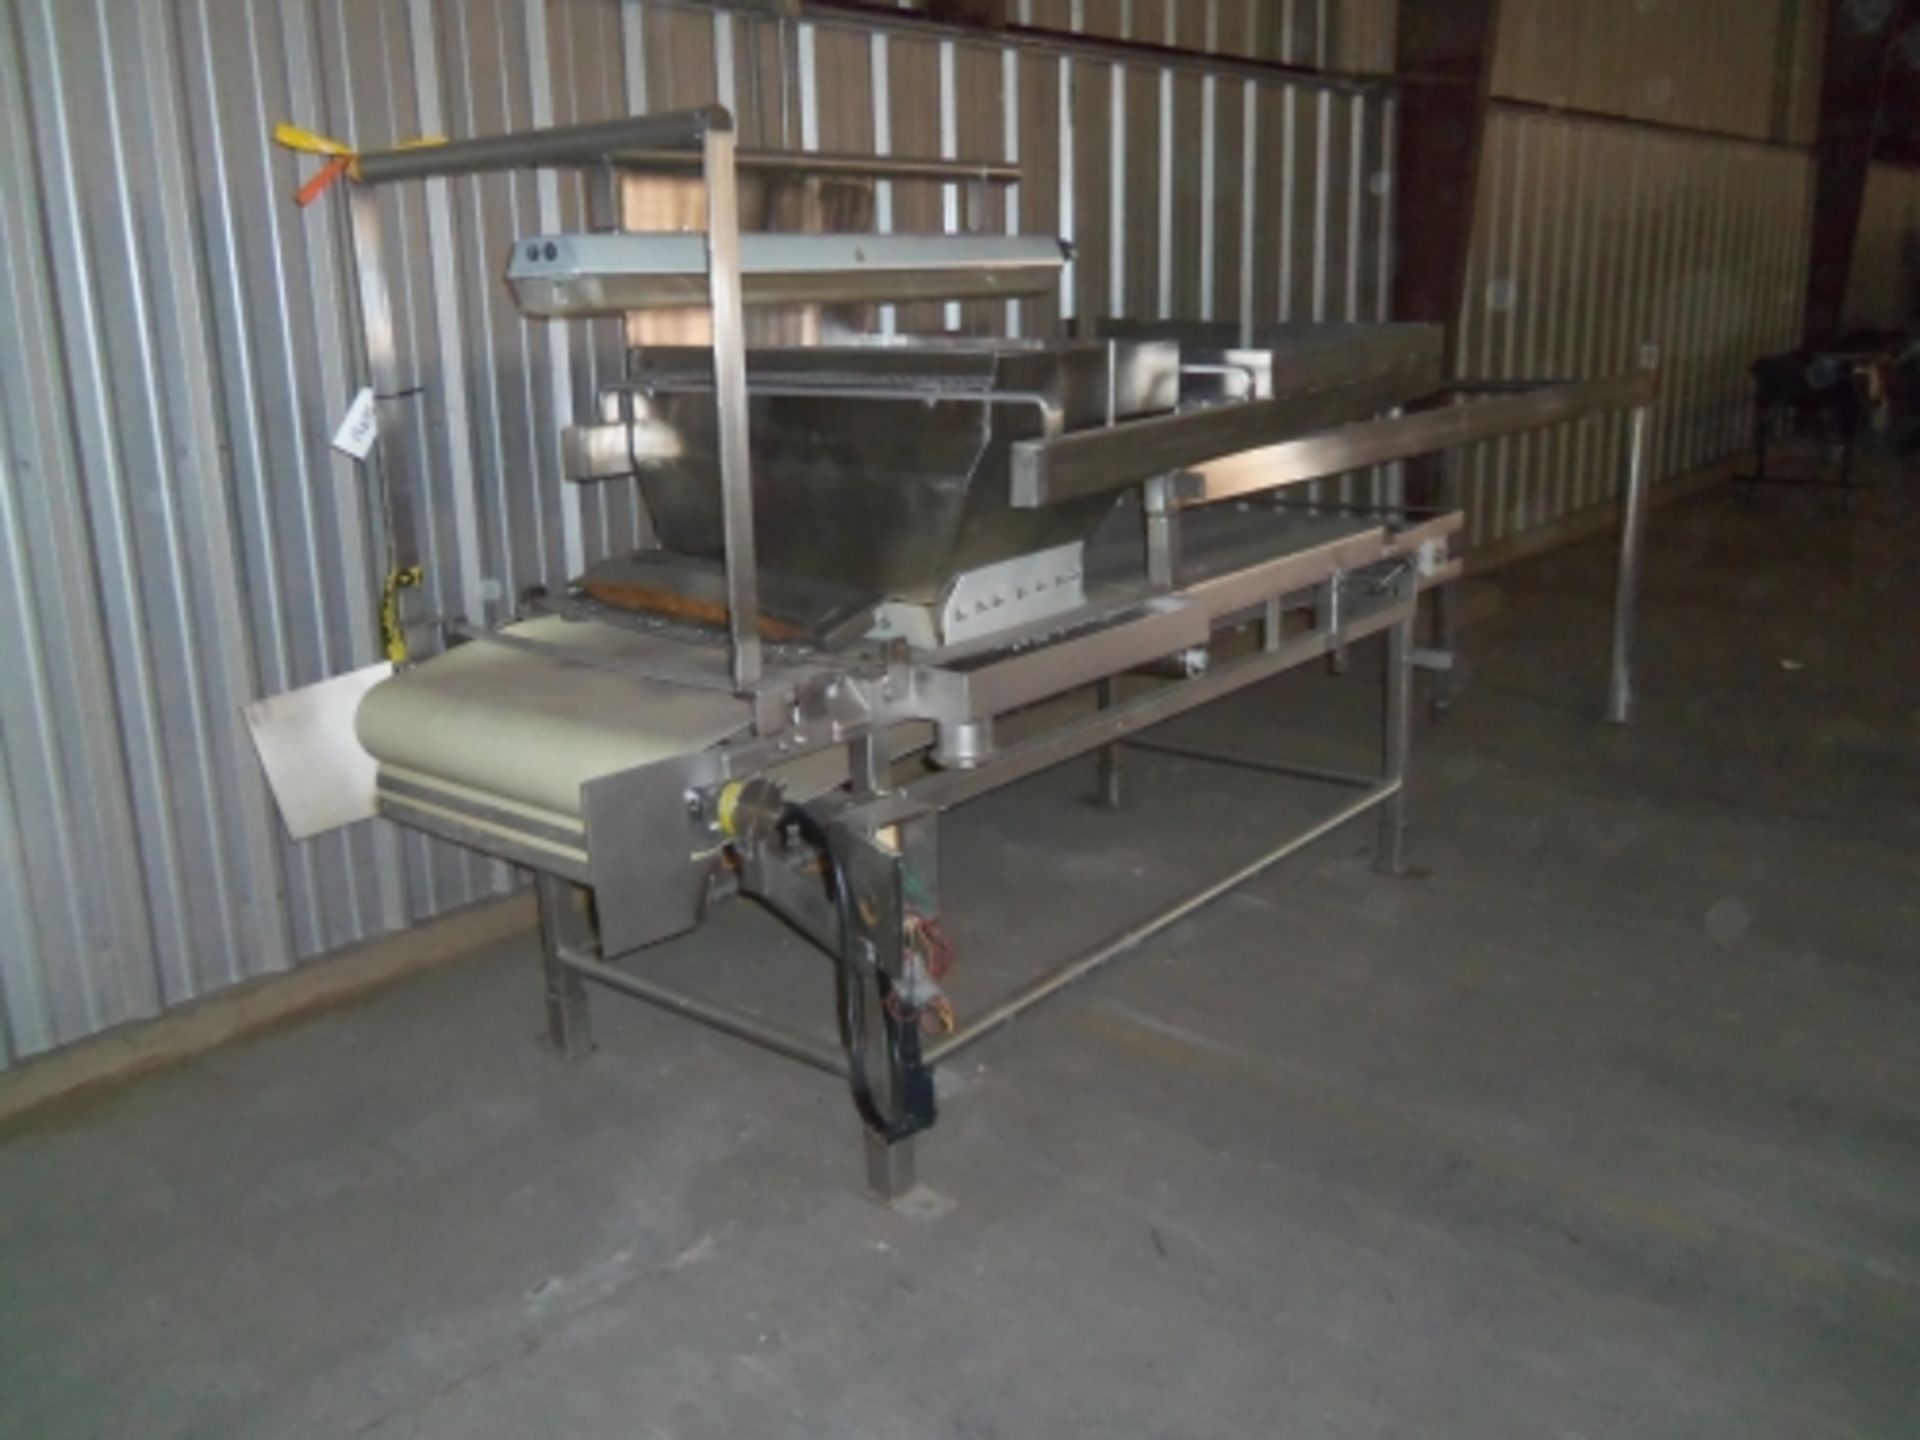 34” wide x 8.5’ long stainless steel sorting conveyor